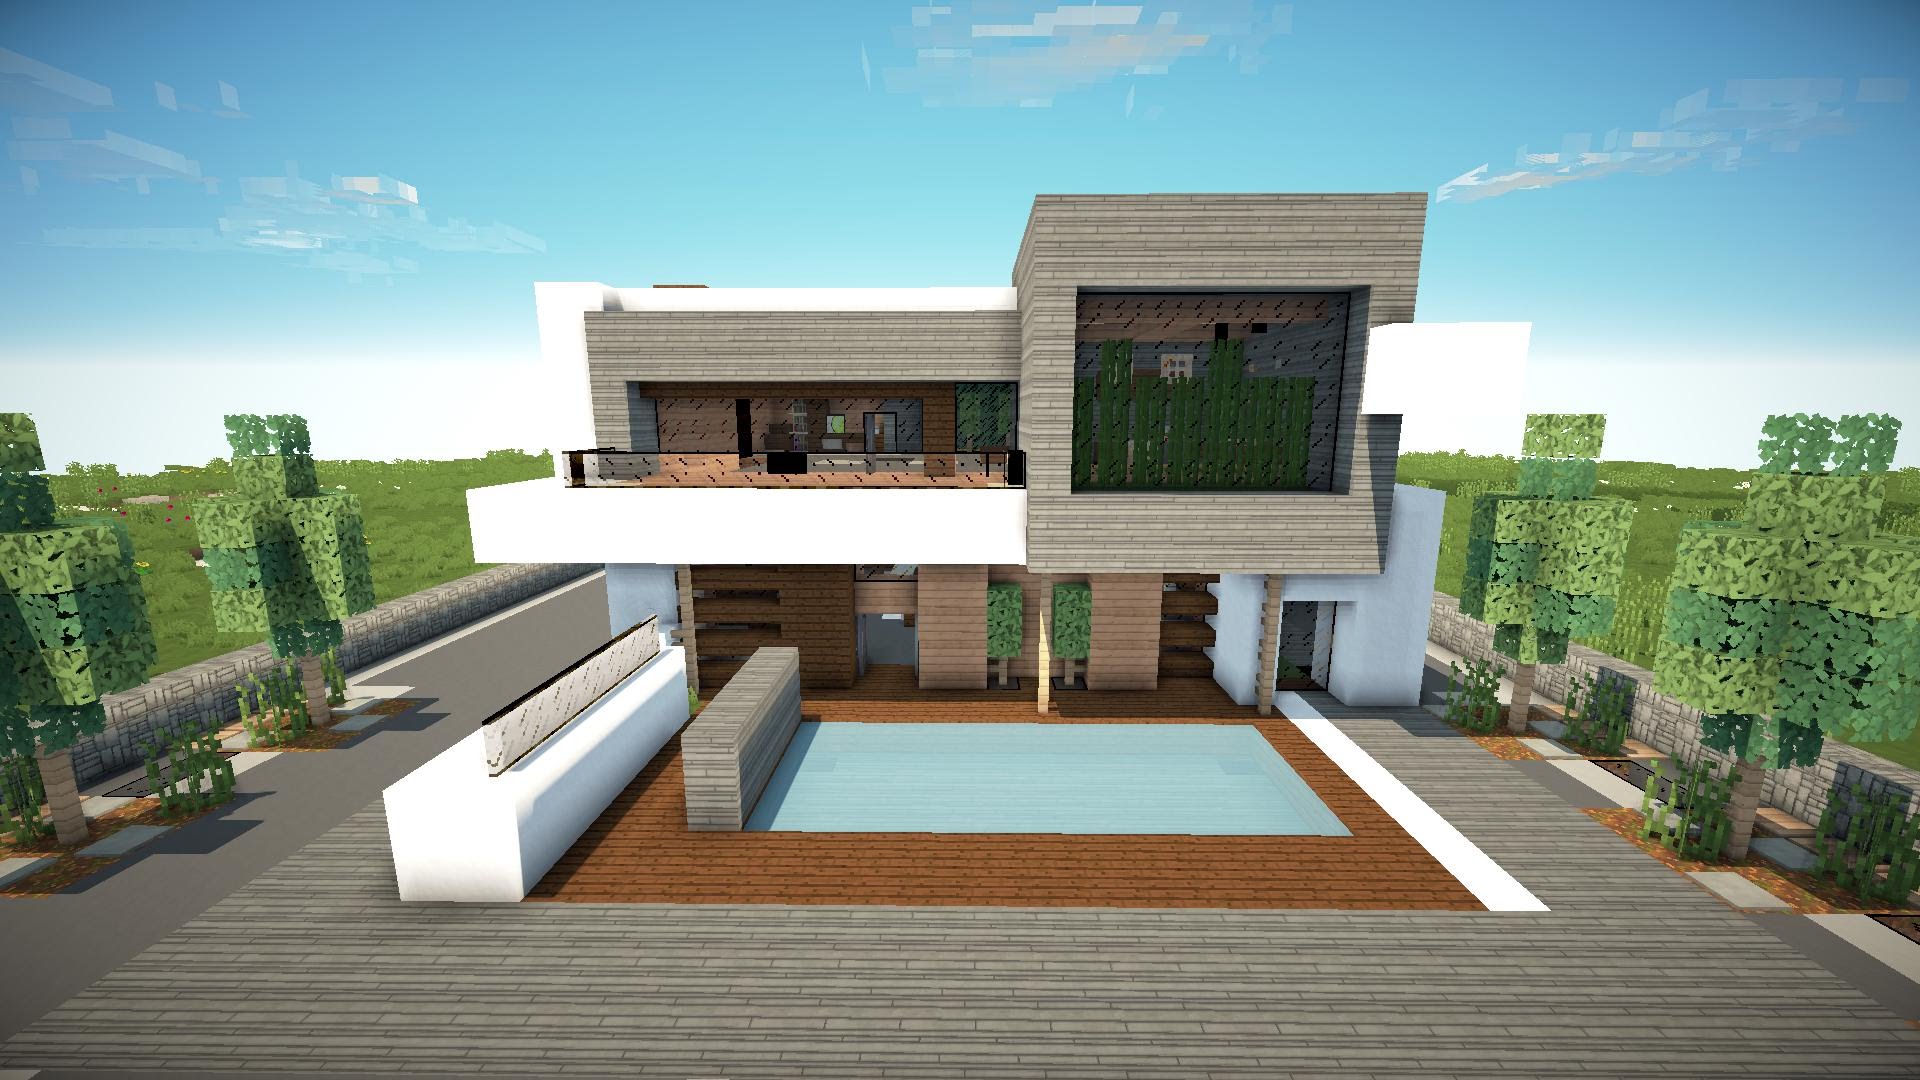 modern minecraft house designs Home Design Download Modern Minecraft House Designs Pictures